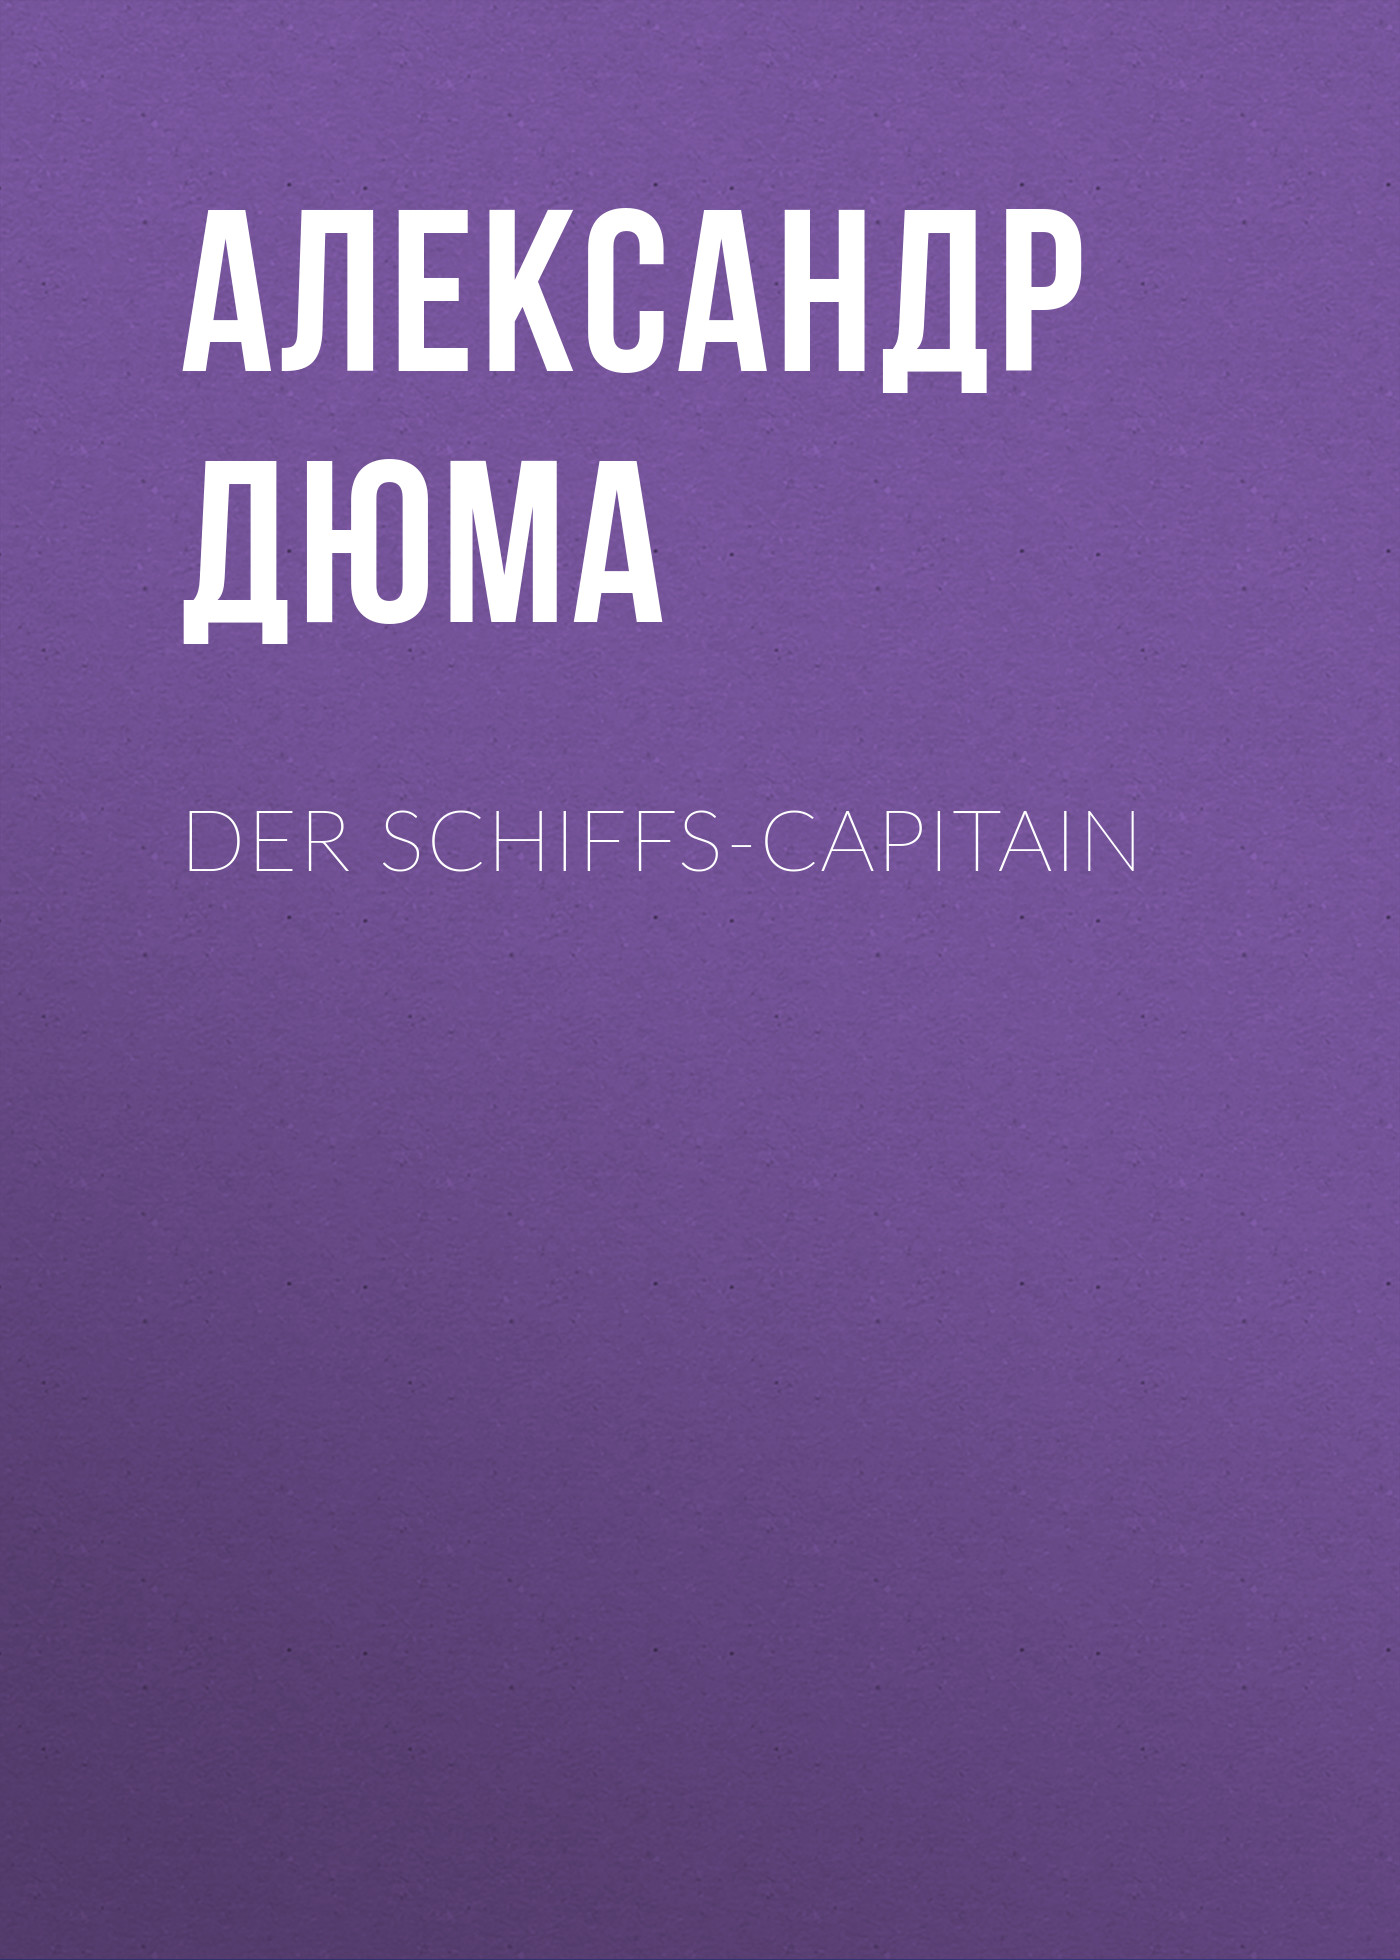 Книга Der Schiffs-Capitain из серии , созданная Alexandre Dumas der Ältere, может относится к жанру Зарубежная классика. Стоимость электронной книги Der Schiffs-Capitain с идентификатором 48632500 составляет 0 руб.